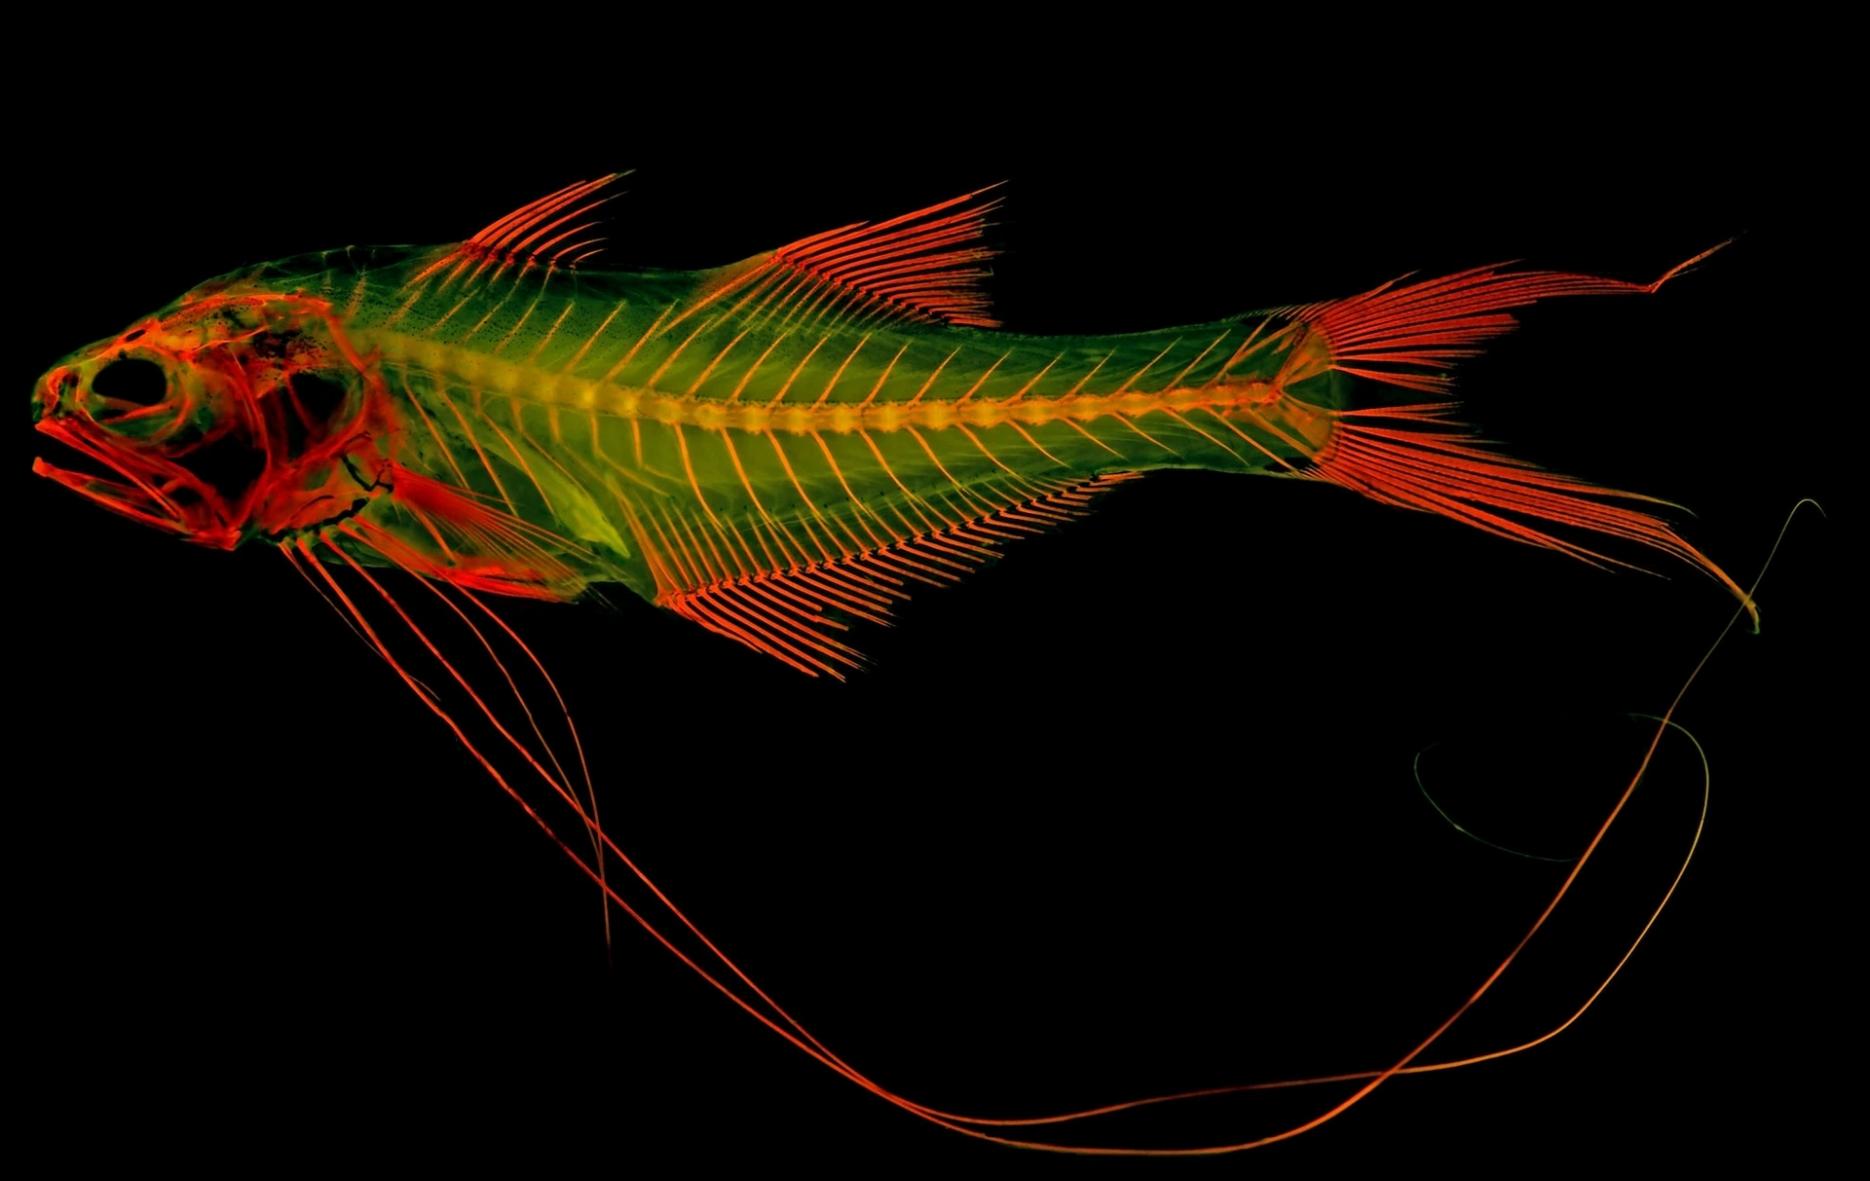 圣克劳德州立大学的生物学教授麦特．戴维斯以五丝长指马鲅（royal threadfin）染过红色染剂的骨骼标本为例，说明这项技术与夜光玩具的原理类似，在特定波长